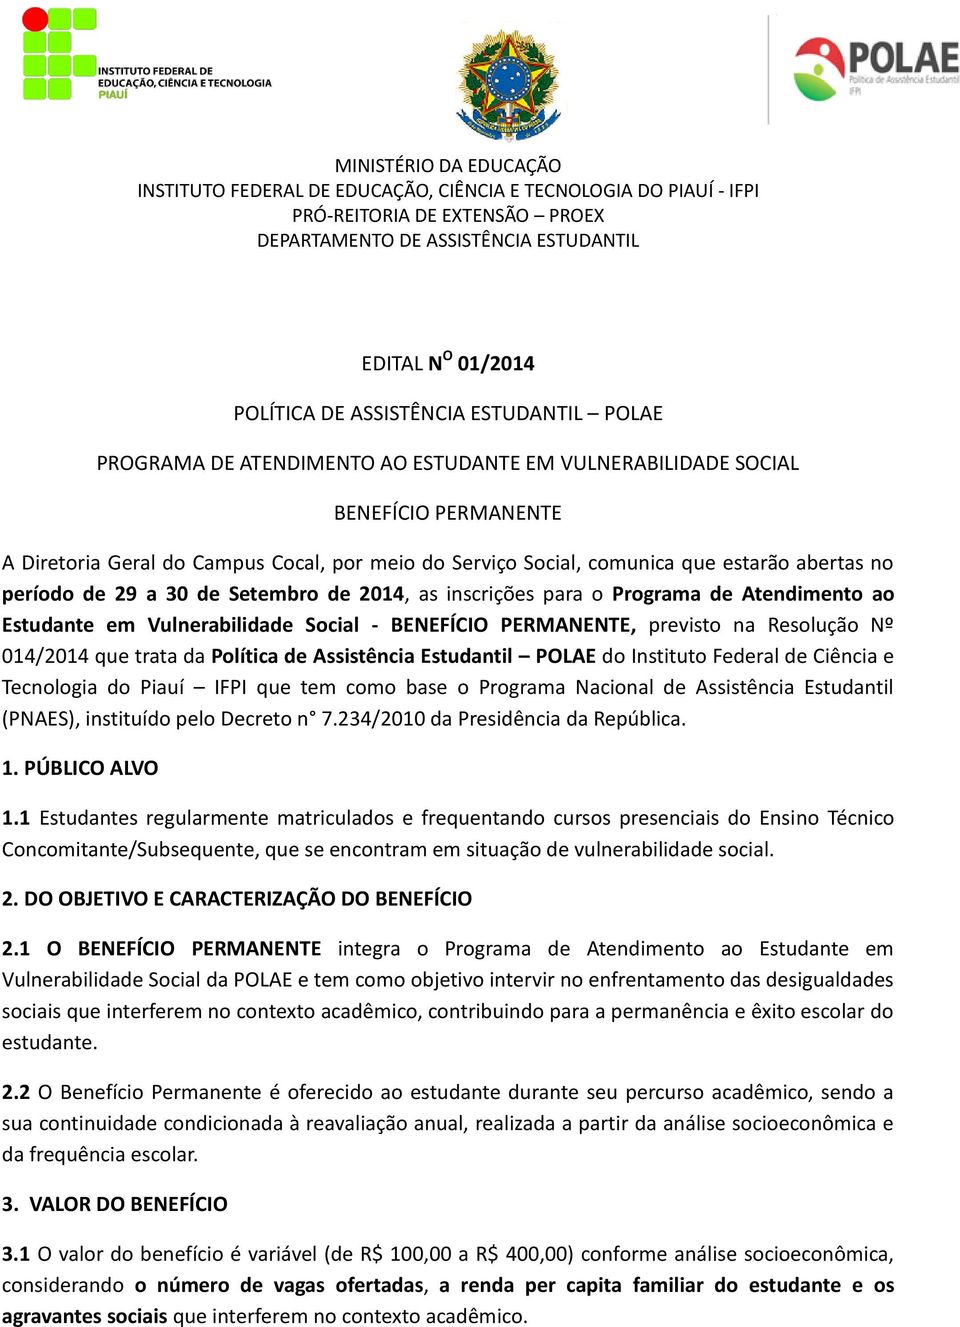 Resolução Nº 014/2014 que trata da Política de Assistência Estudantil POLAE do Instituto Federal de Ciência e Tecnologia do Piauí IFPI que tem como base o Programa Nacional de Assistência Estudantil